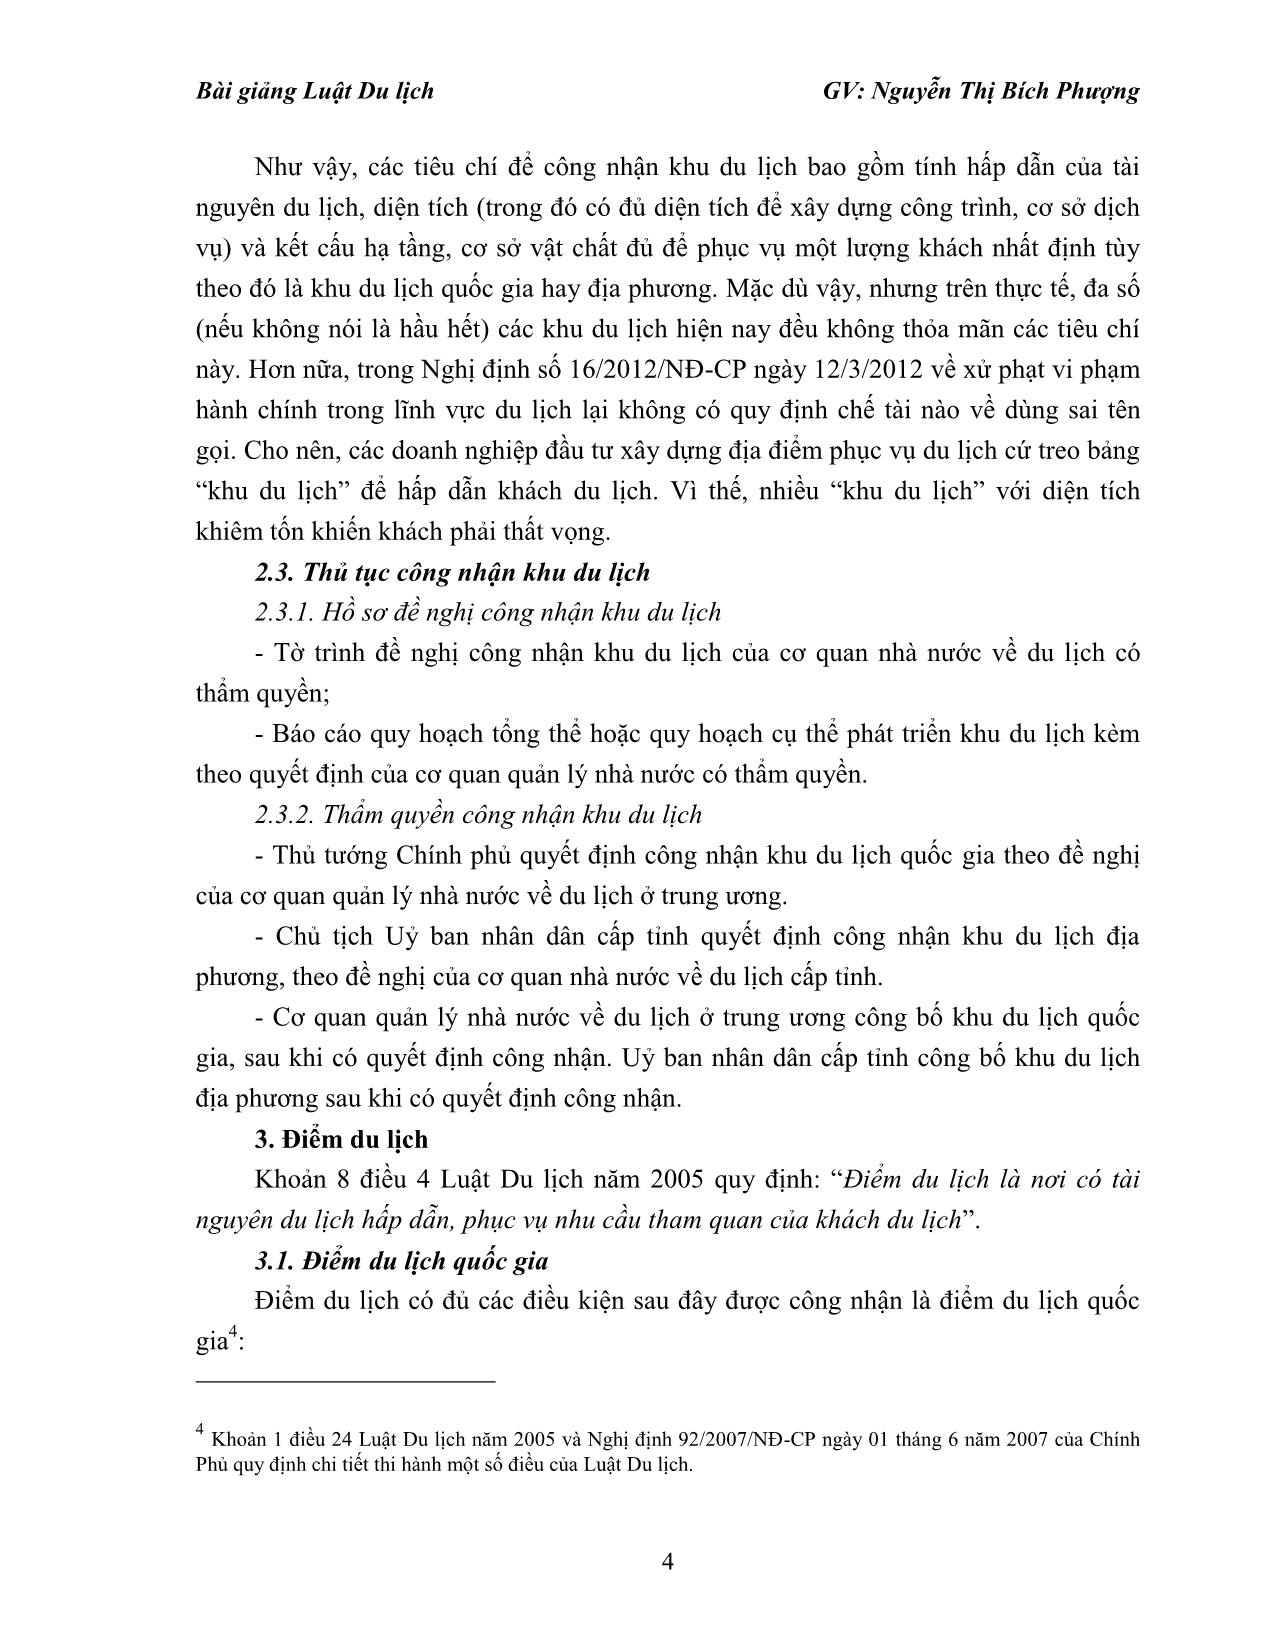 Bài giảng Luật du lịch - Nguyễn Thị Bích Phượng trang 4